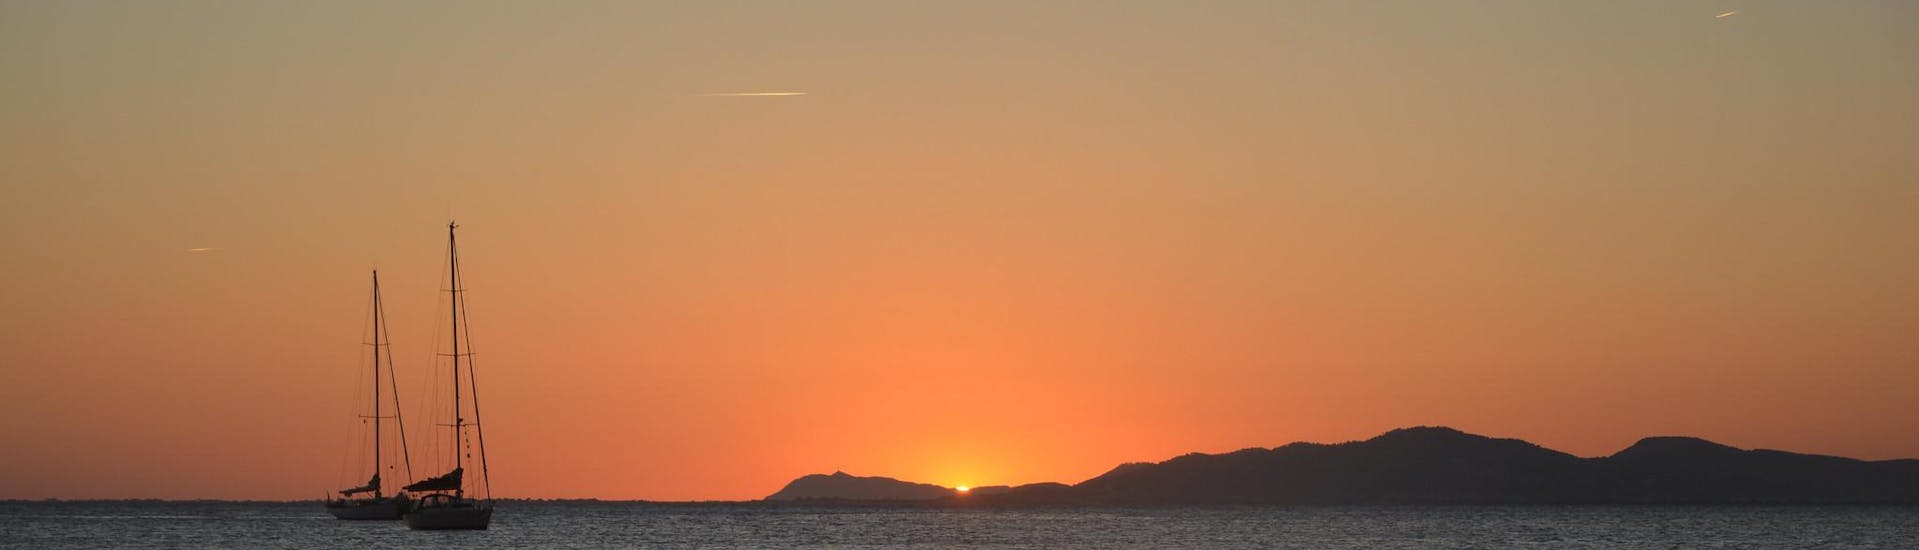 Zwei Boote während eines Tagesausflugs mit Menschen, die einen schönen Sonnenuntergang genießen.